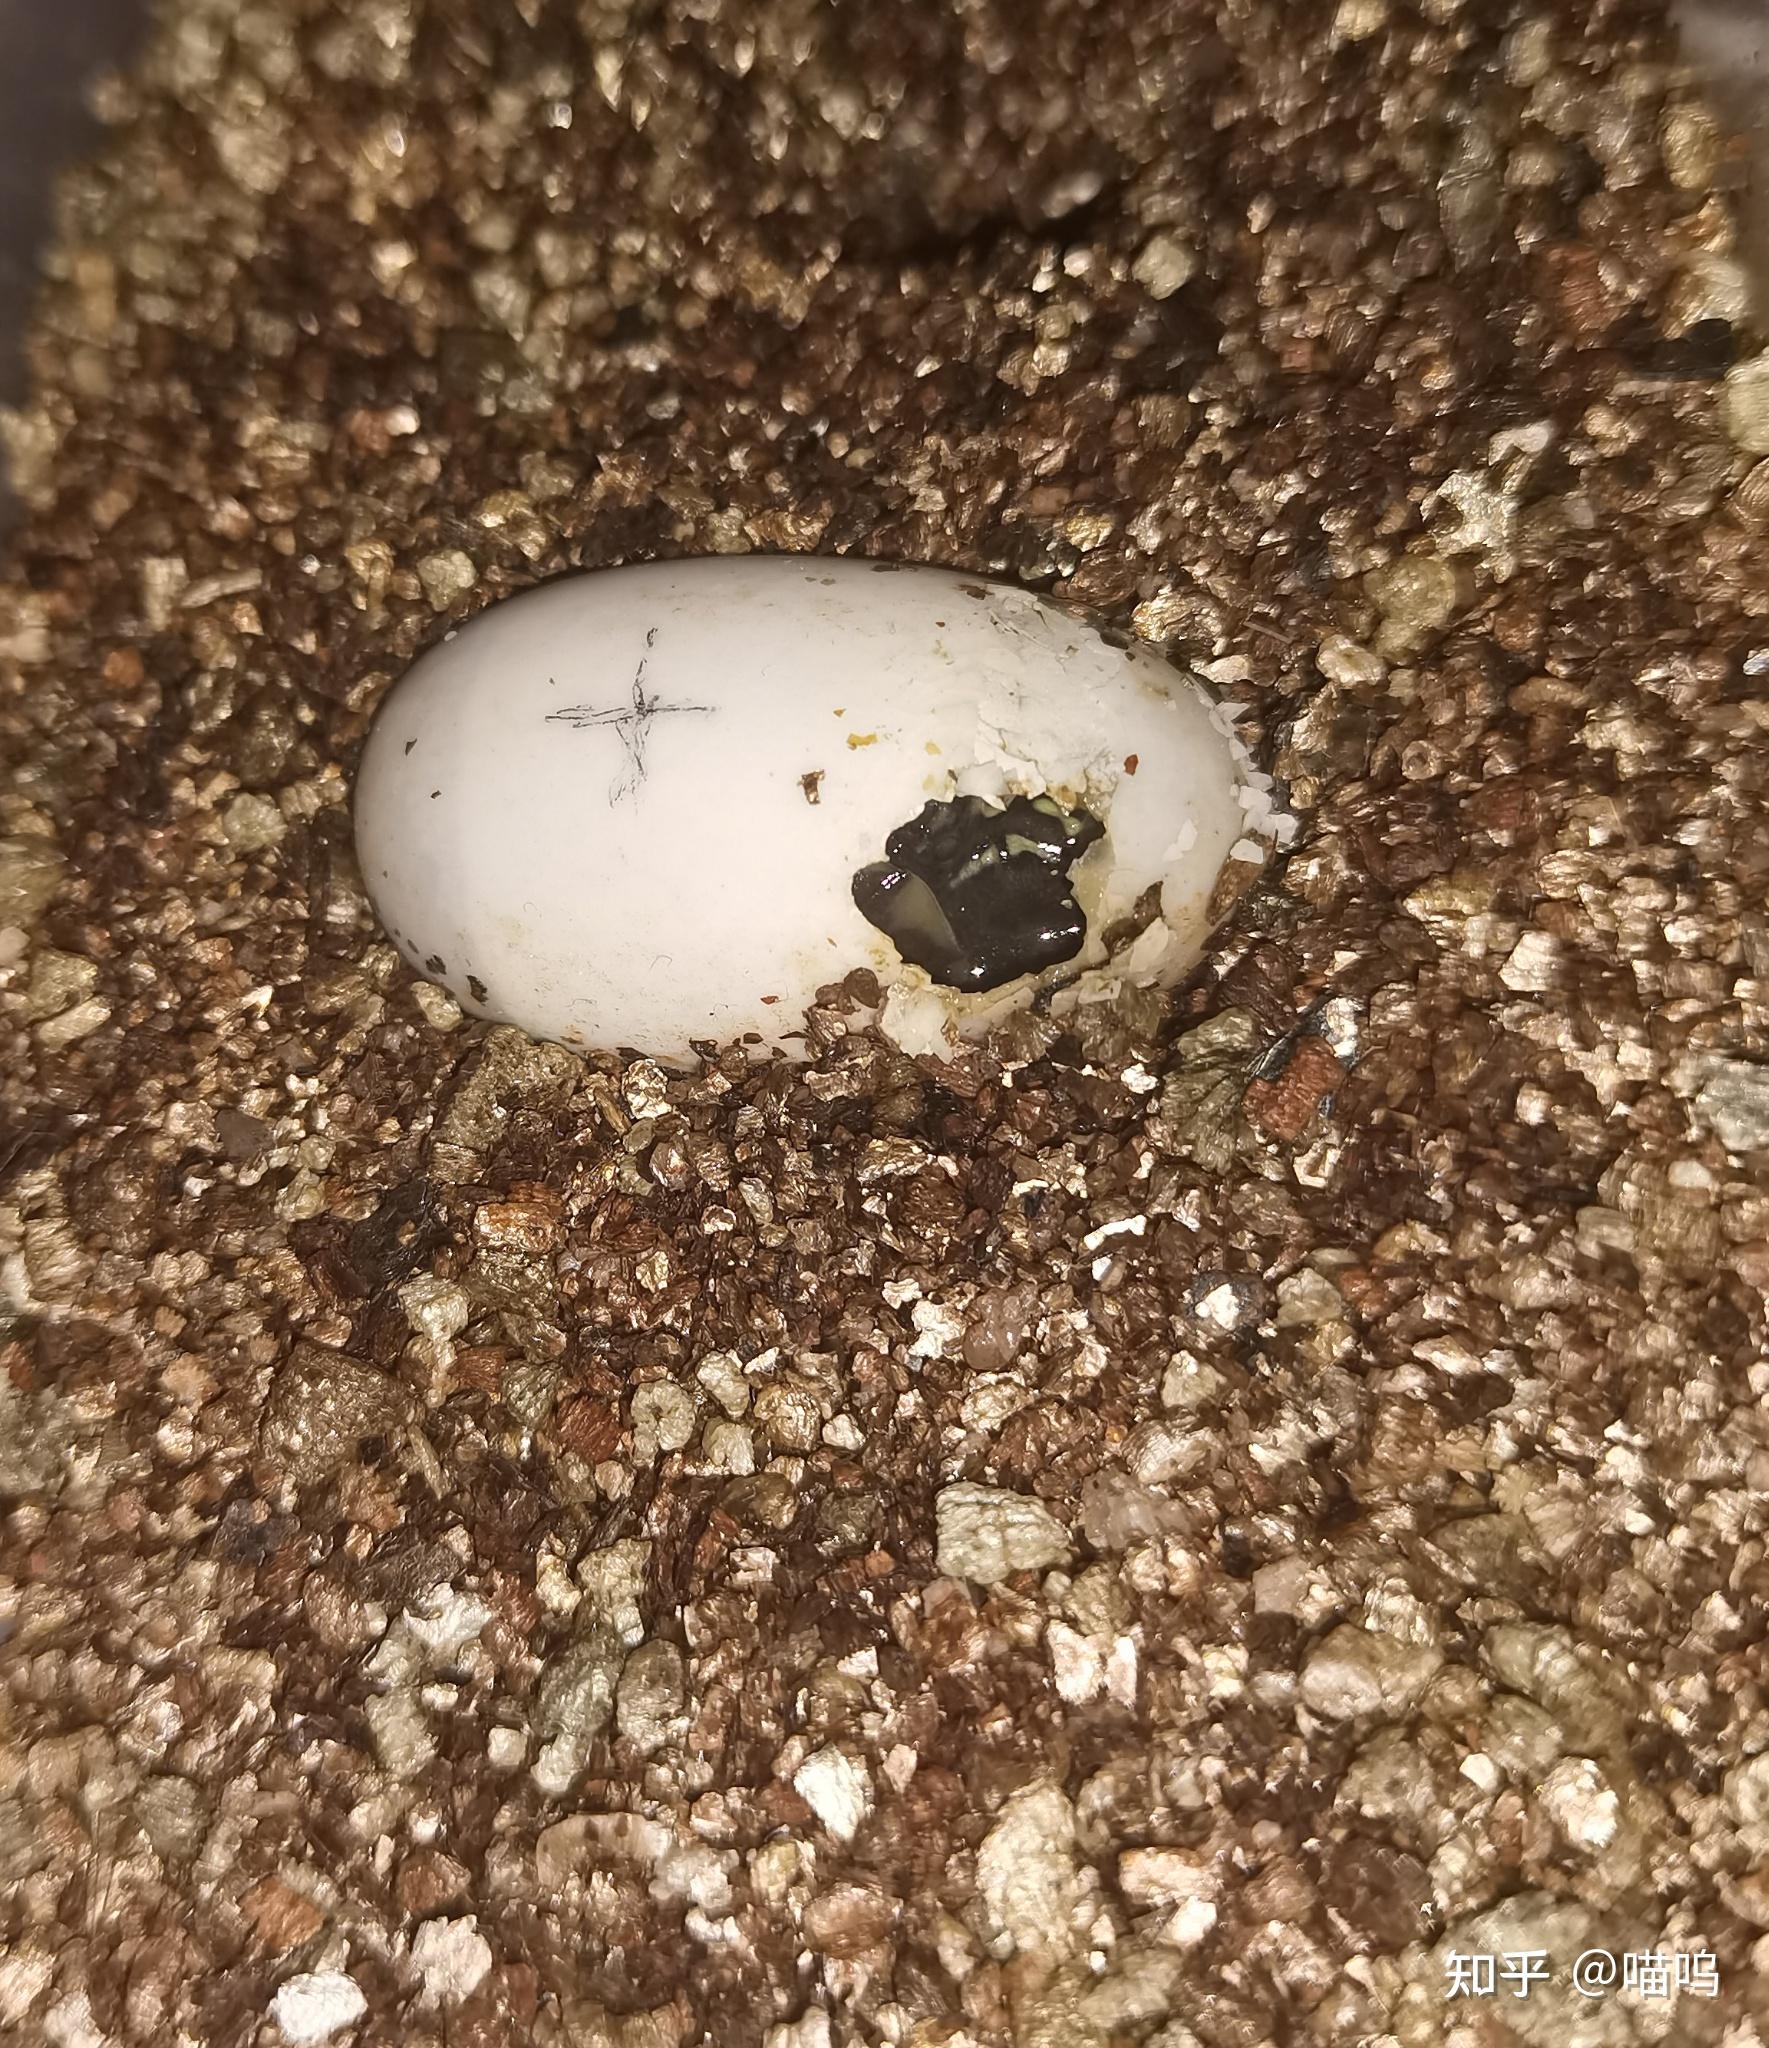 乌龟蛋被乌龟开出一个小洞,但四天了乌龟还没有出来,还活着,应该怎么